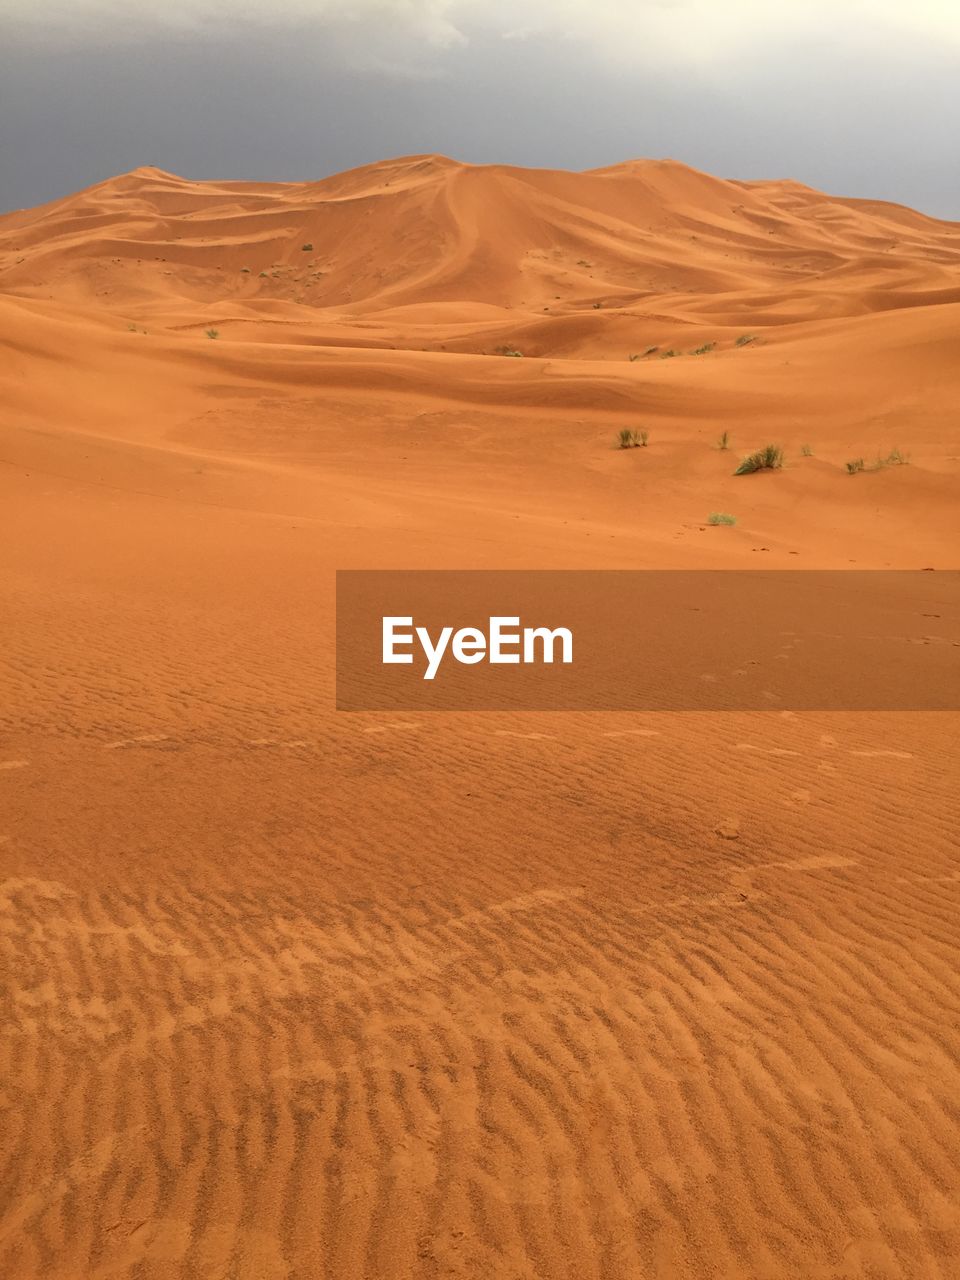 View of a desert